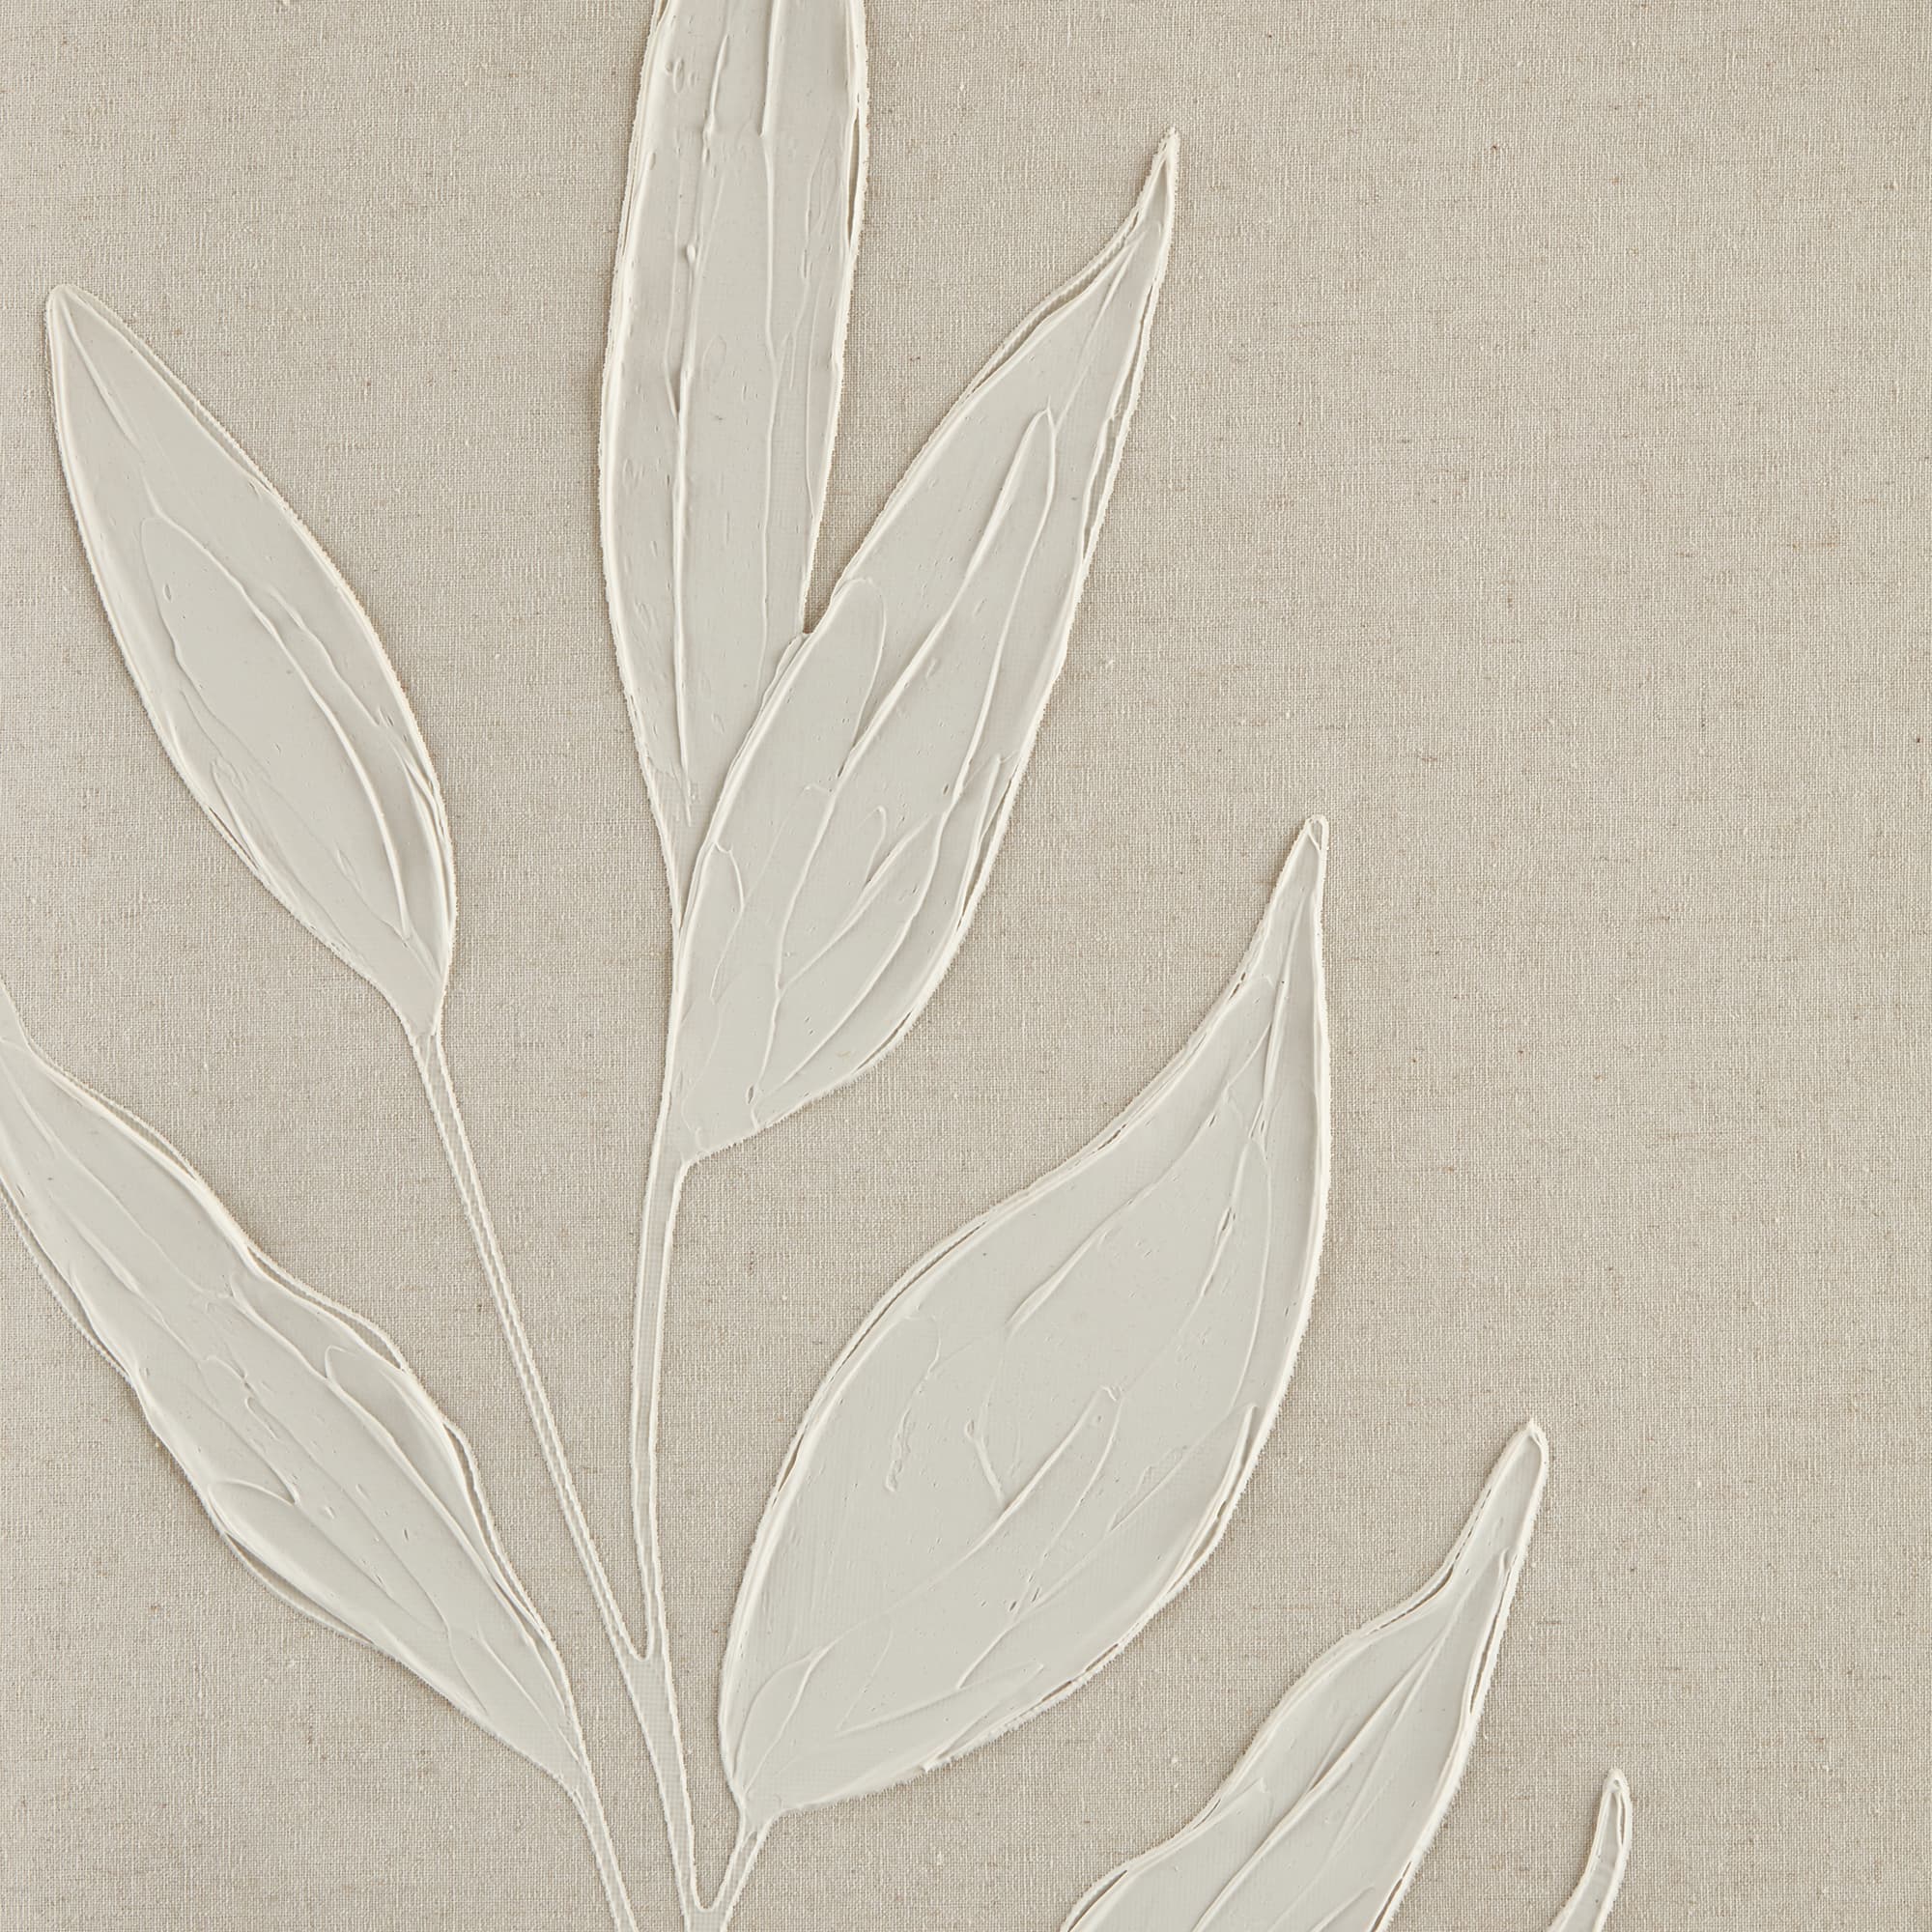 Tableau encadré de feuilles blanches